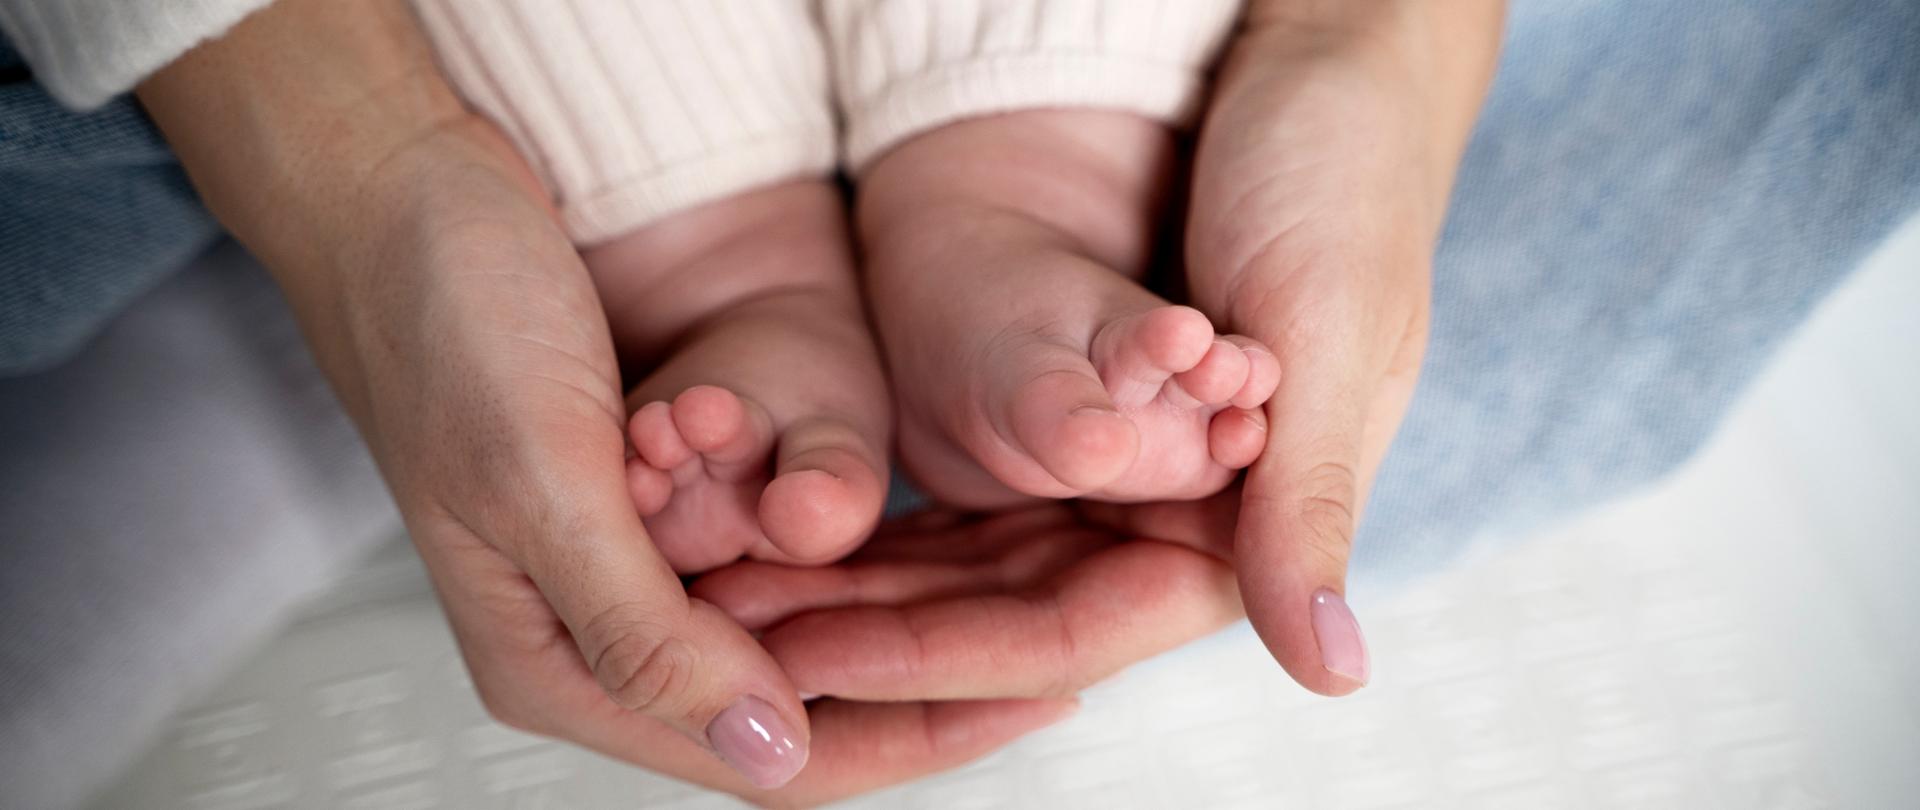 Zdjęcie przedstawia dłonie kobiety trzymające stopy małego dziecka